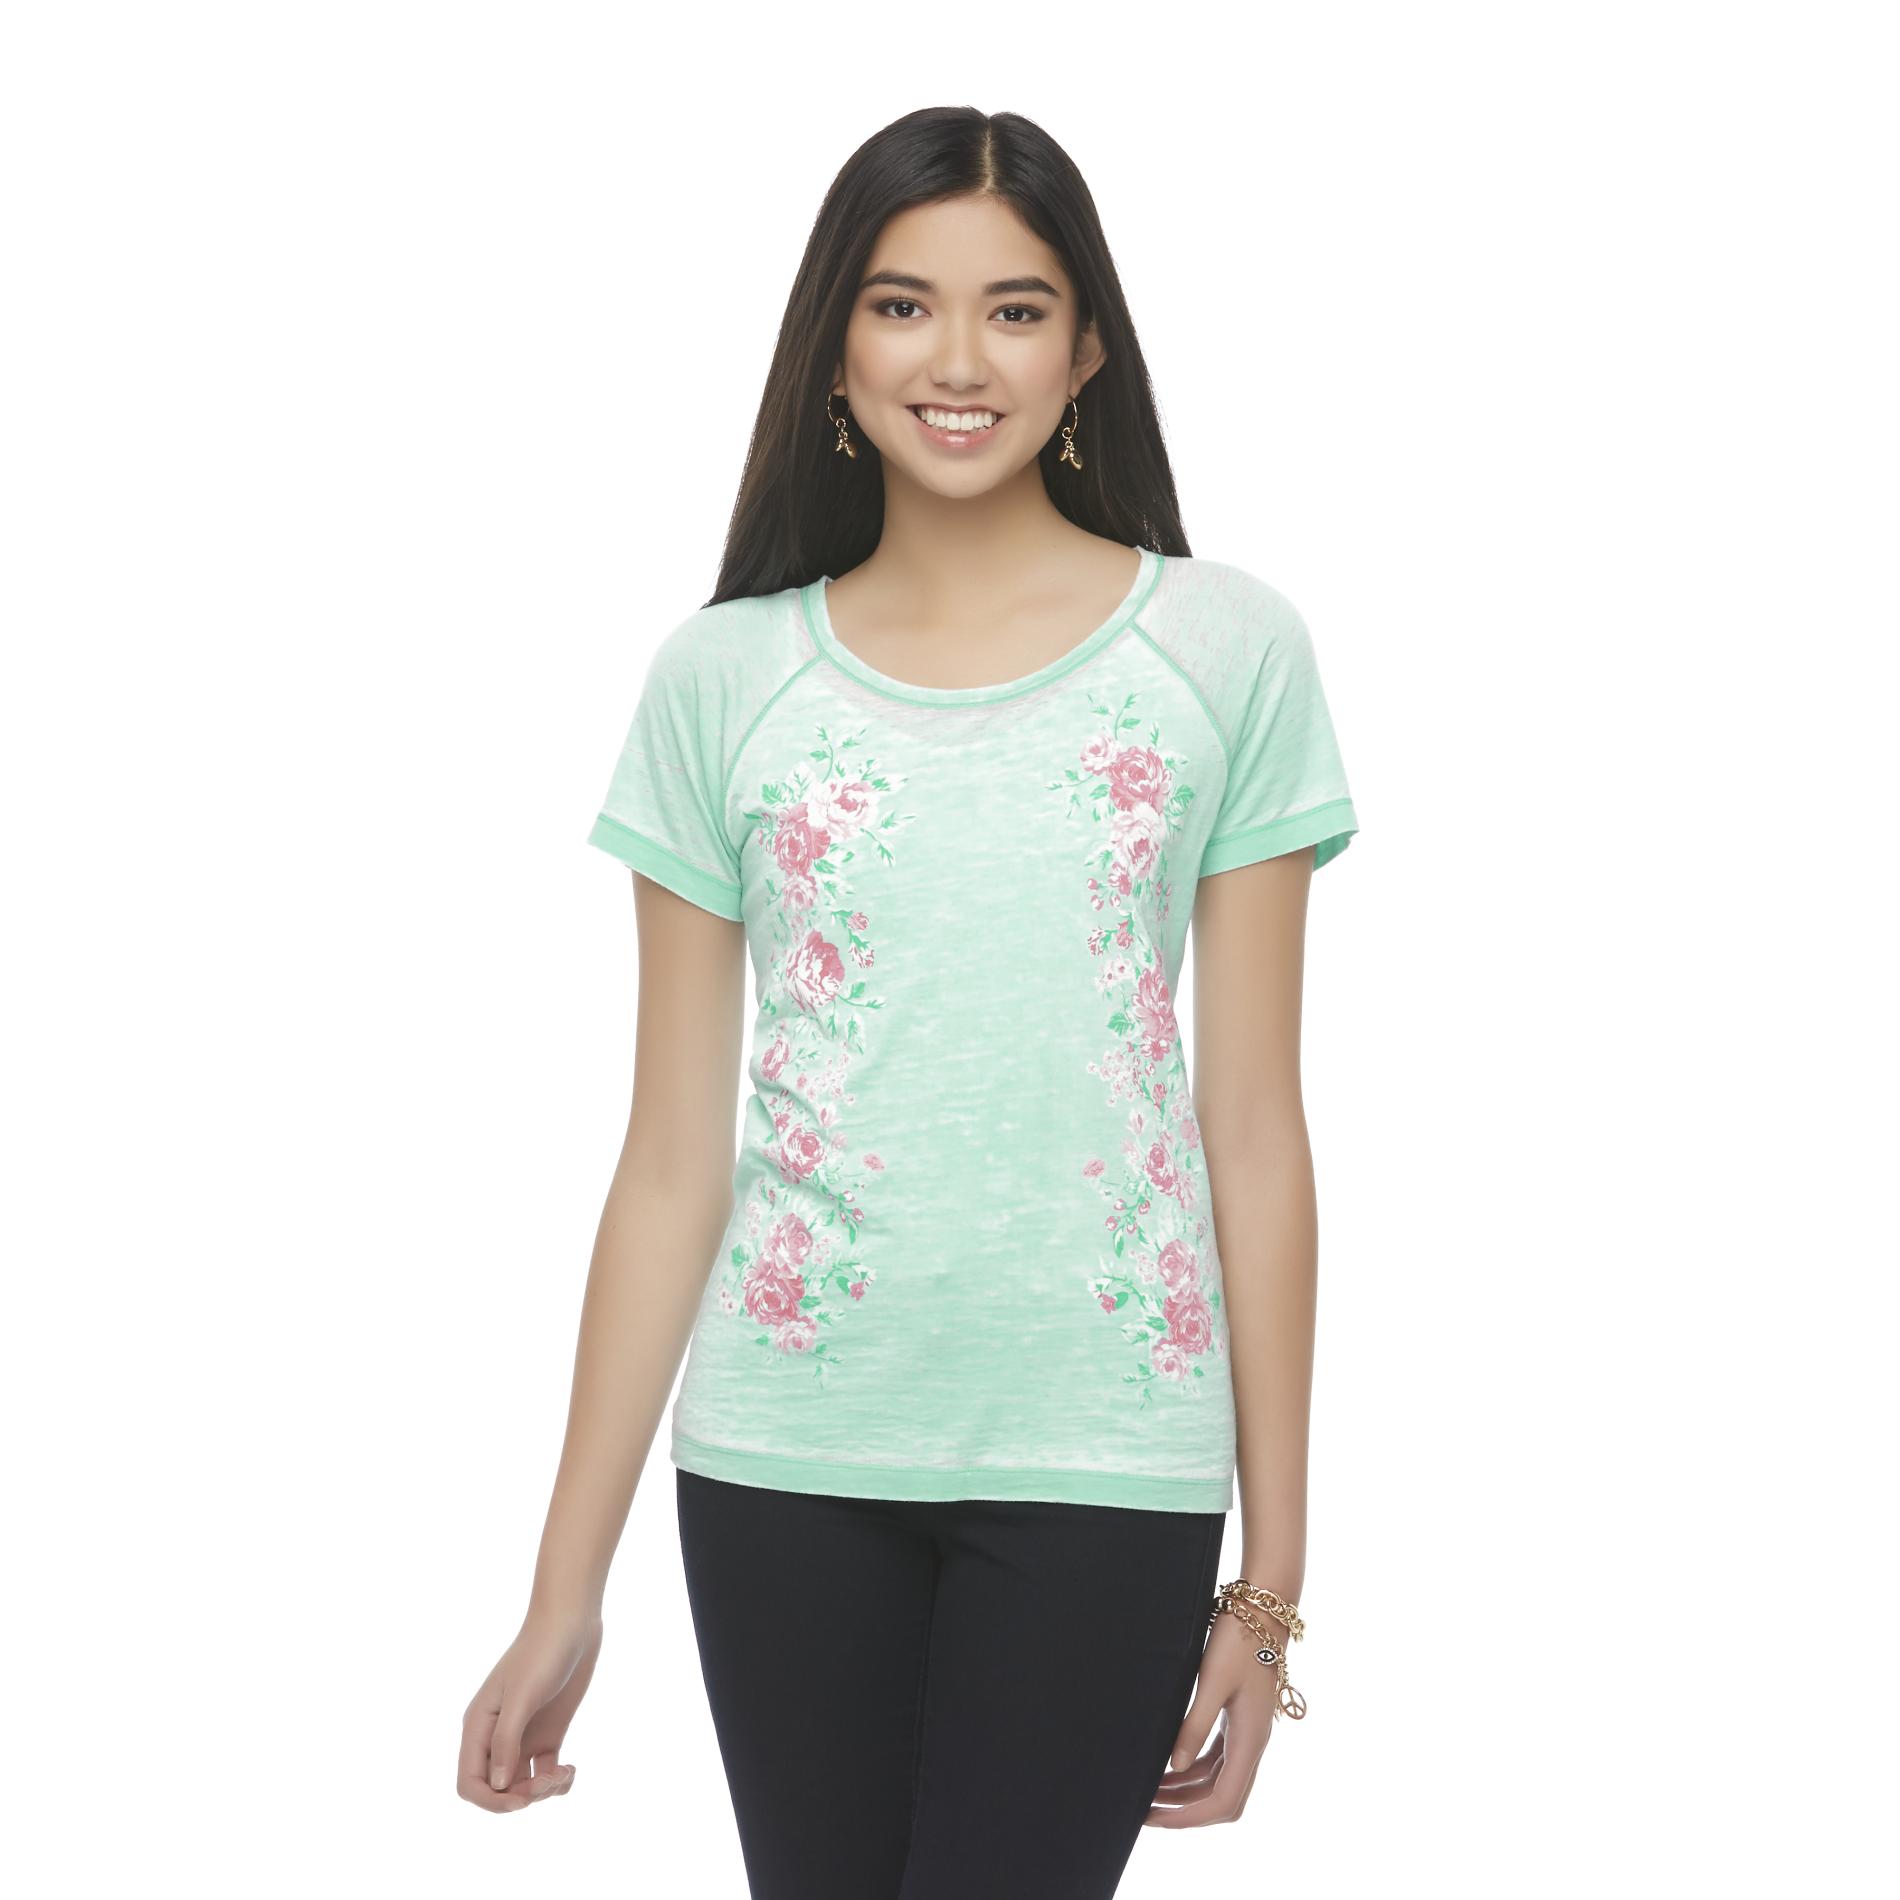 Joe Boxer Juniors Burnout Graphic T-Shirt - Floral Print